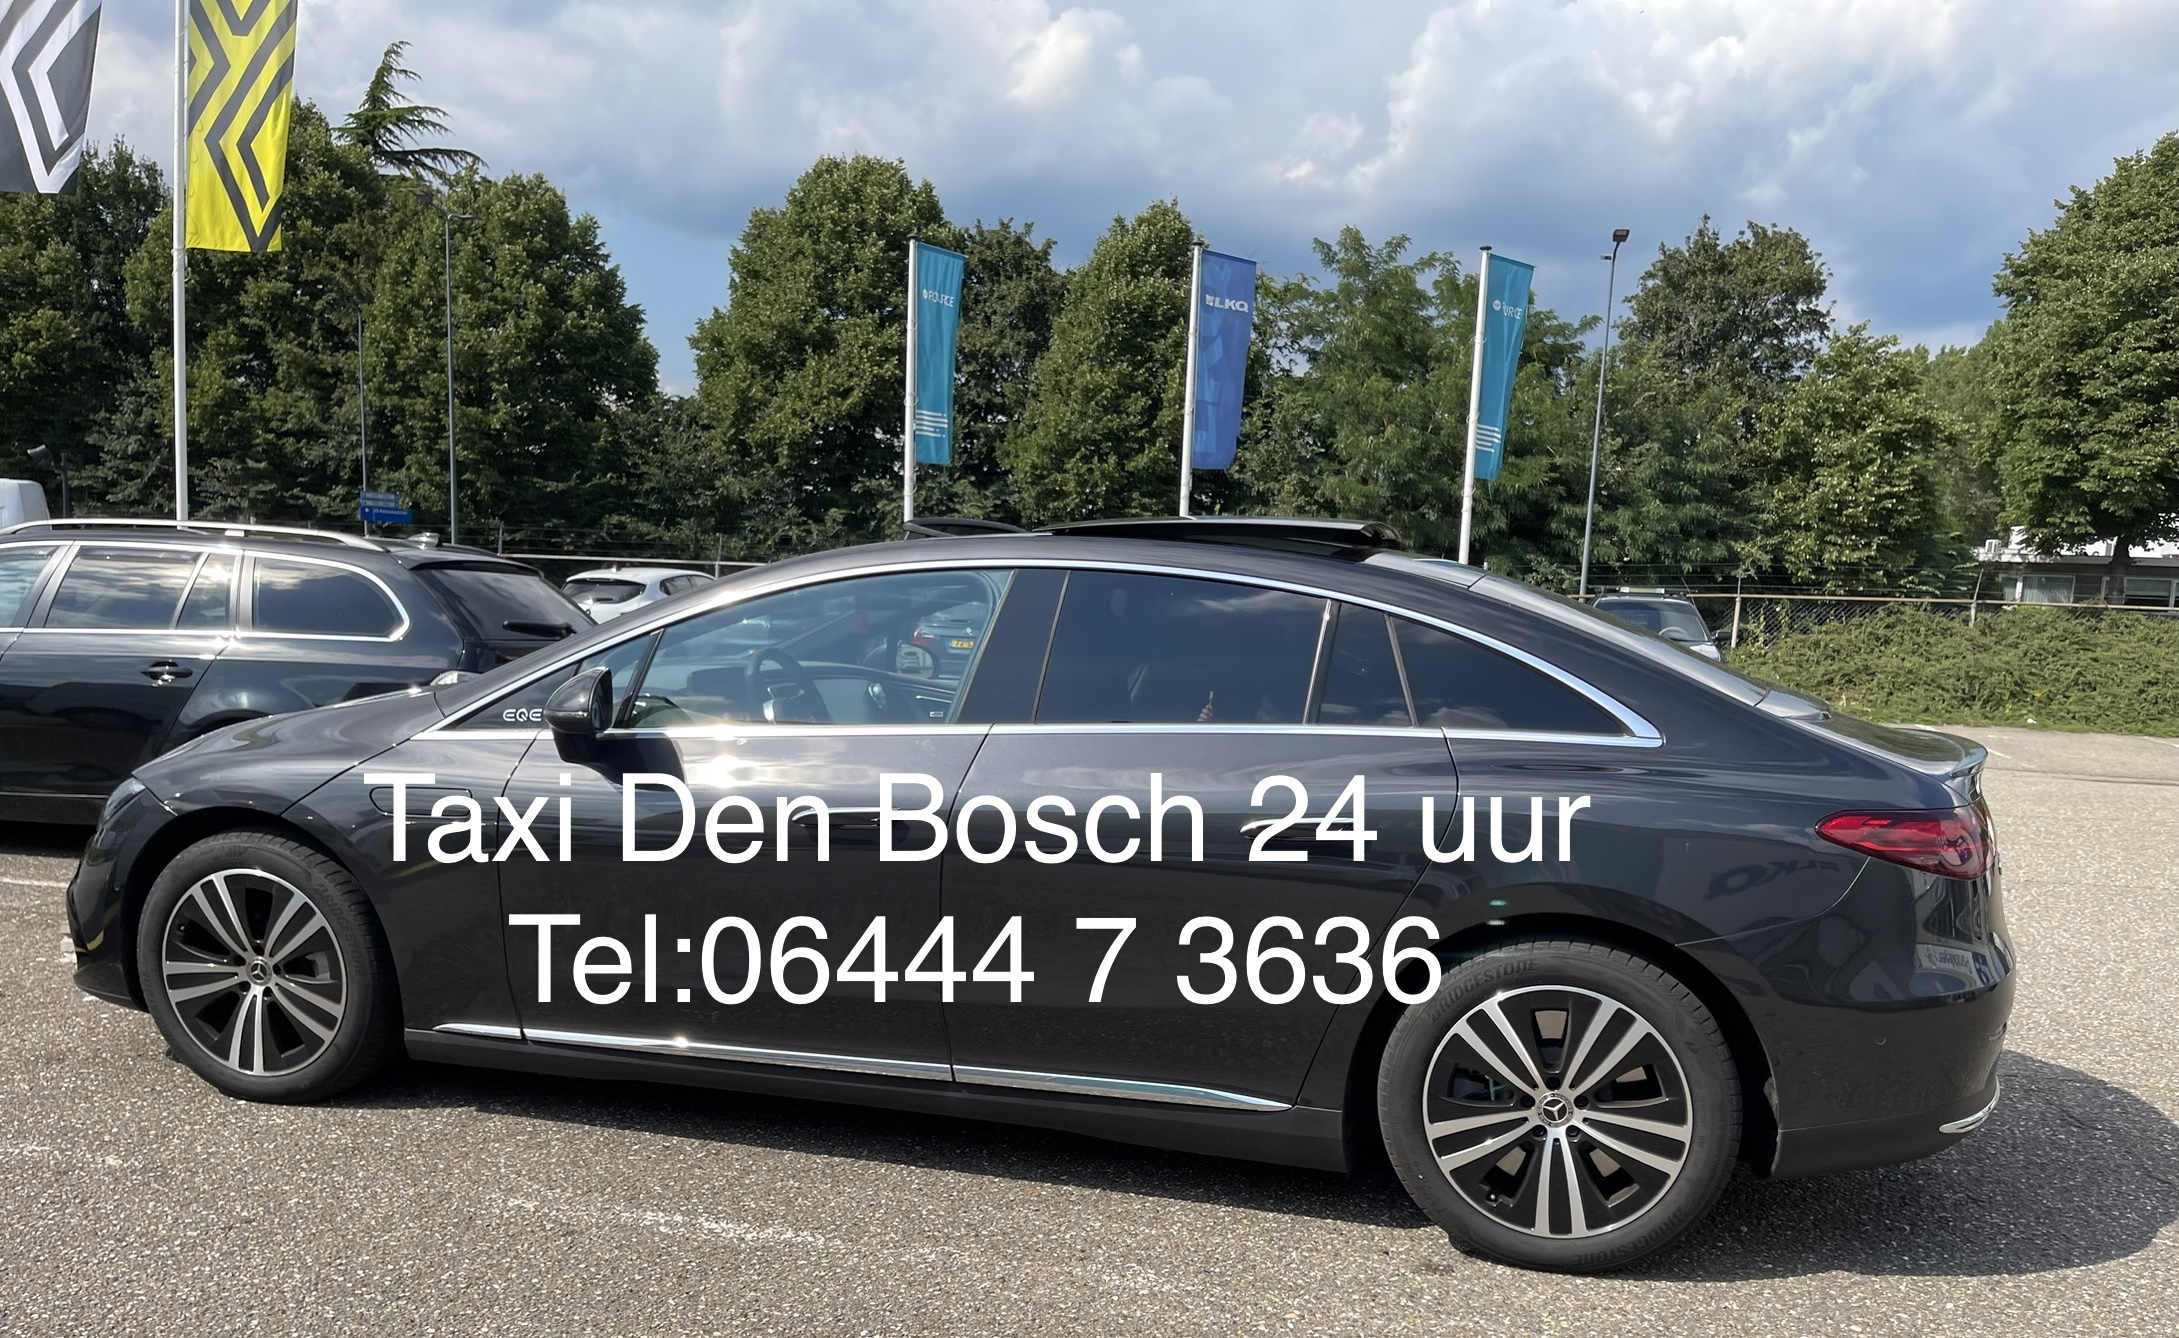 Goedkope taxi naar Schiphol nodig? Of zoekt u een betrouwbare en betaalbare taxi vanuit Amsterdam Schiphol airport? Al vanaf € 125,-